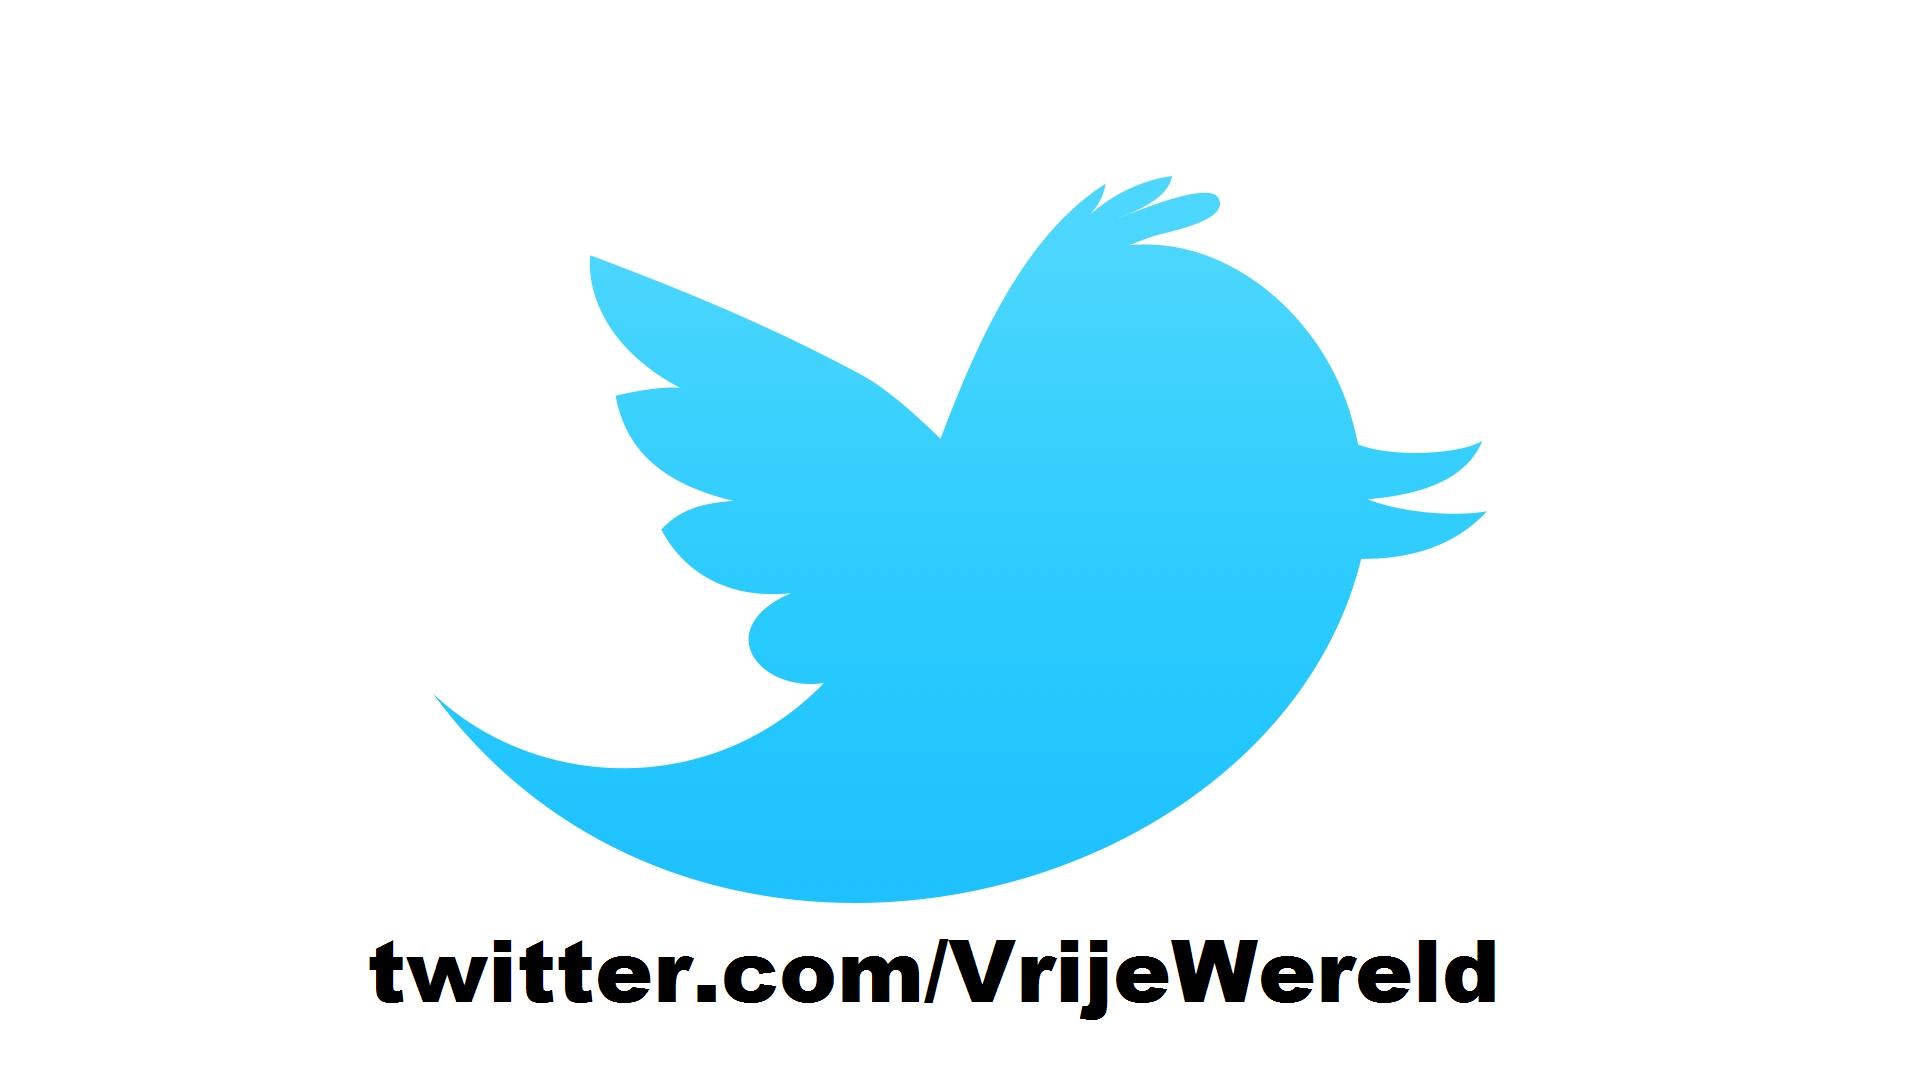 VrijeWereld.org op Twitter.com